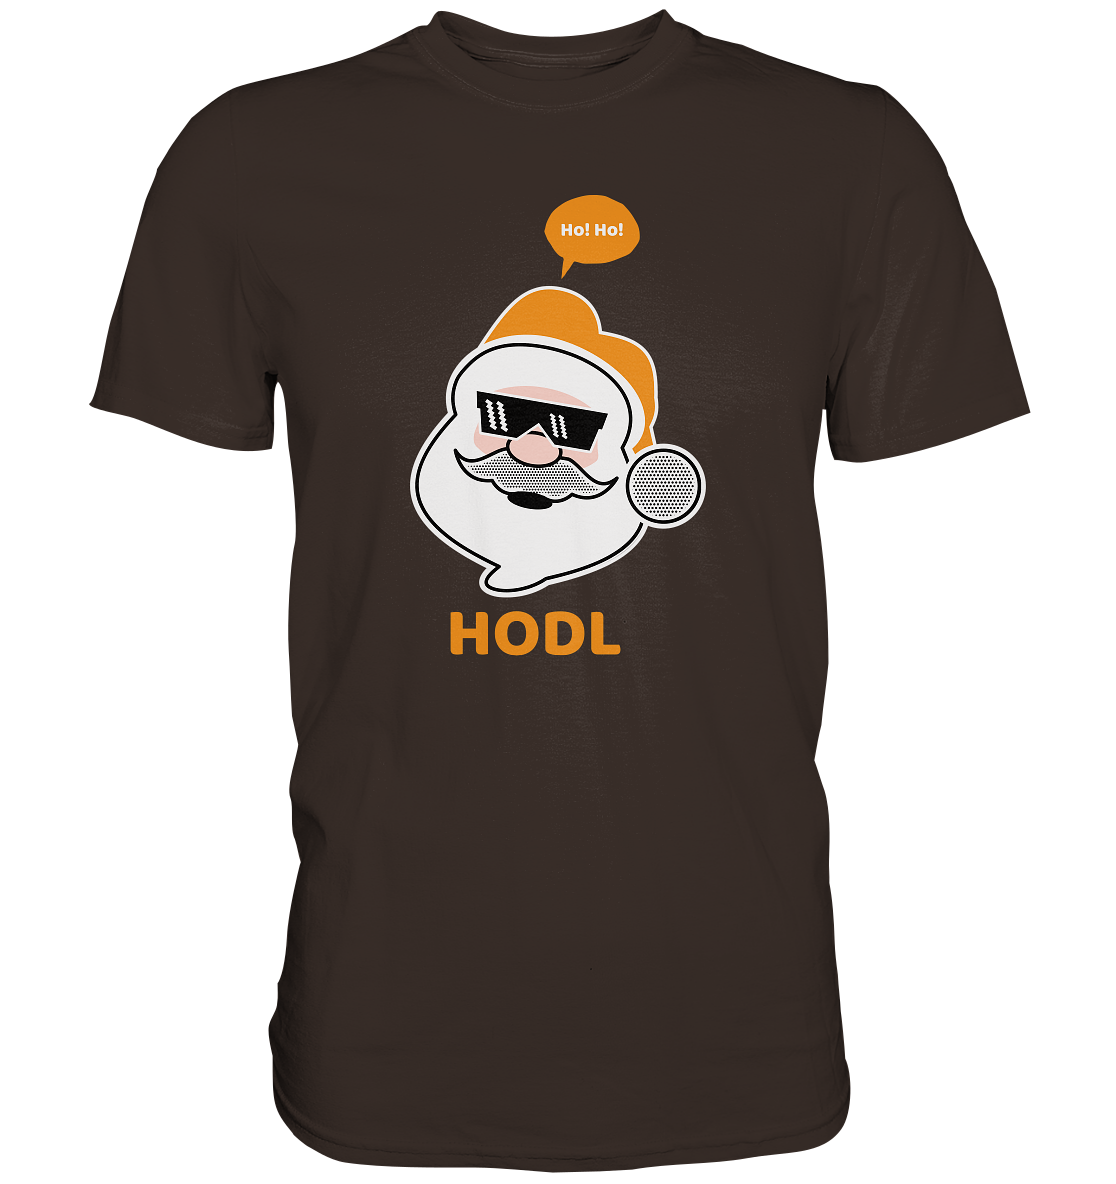 Bitcoin "Ho Ho Hodl" - Premium Shirt